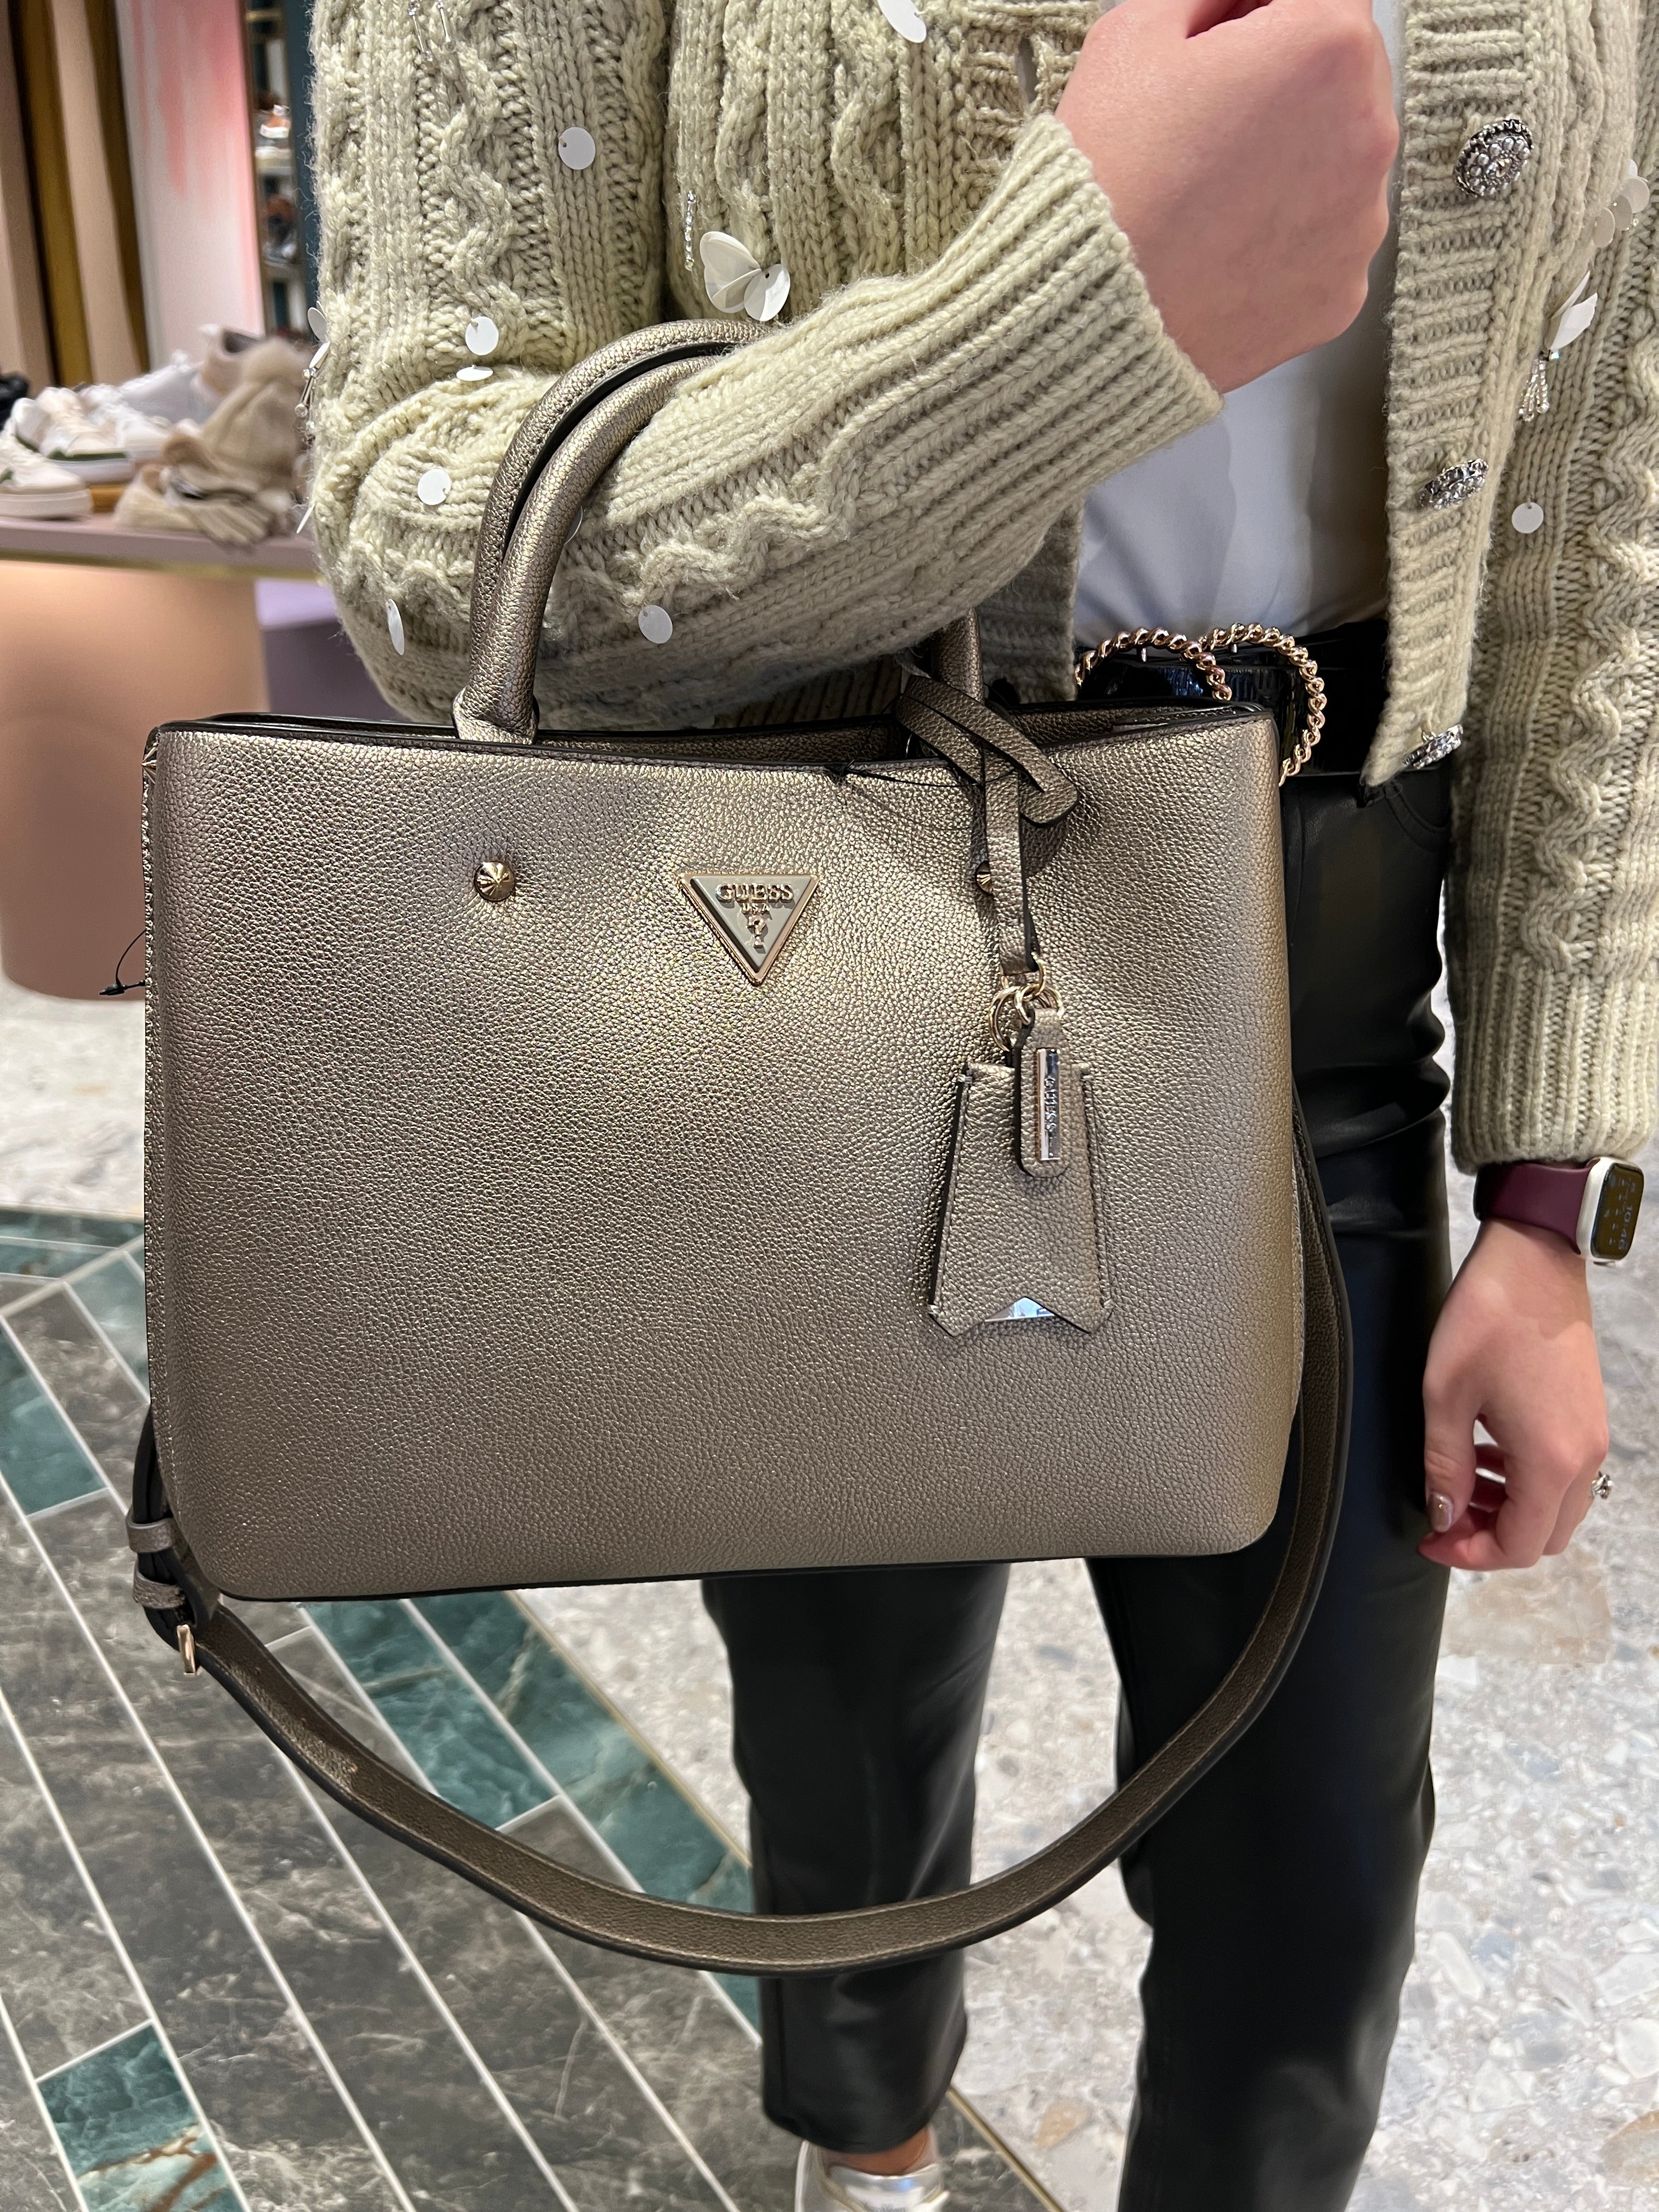 Buy GUESS Mulvey PU Zipper Closure Women's Casual Satchel Handbag (Stone,  Medium) at Amazon.in